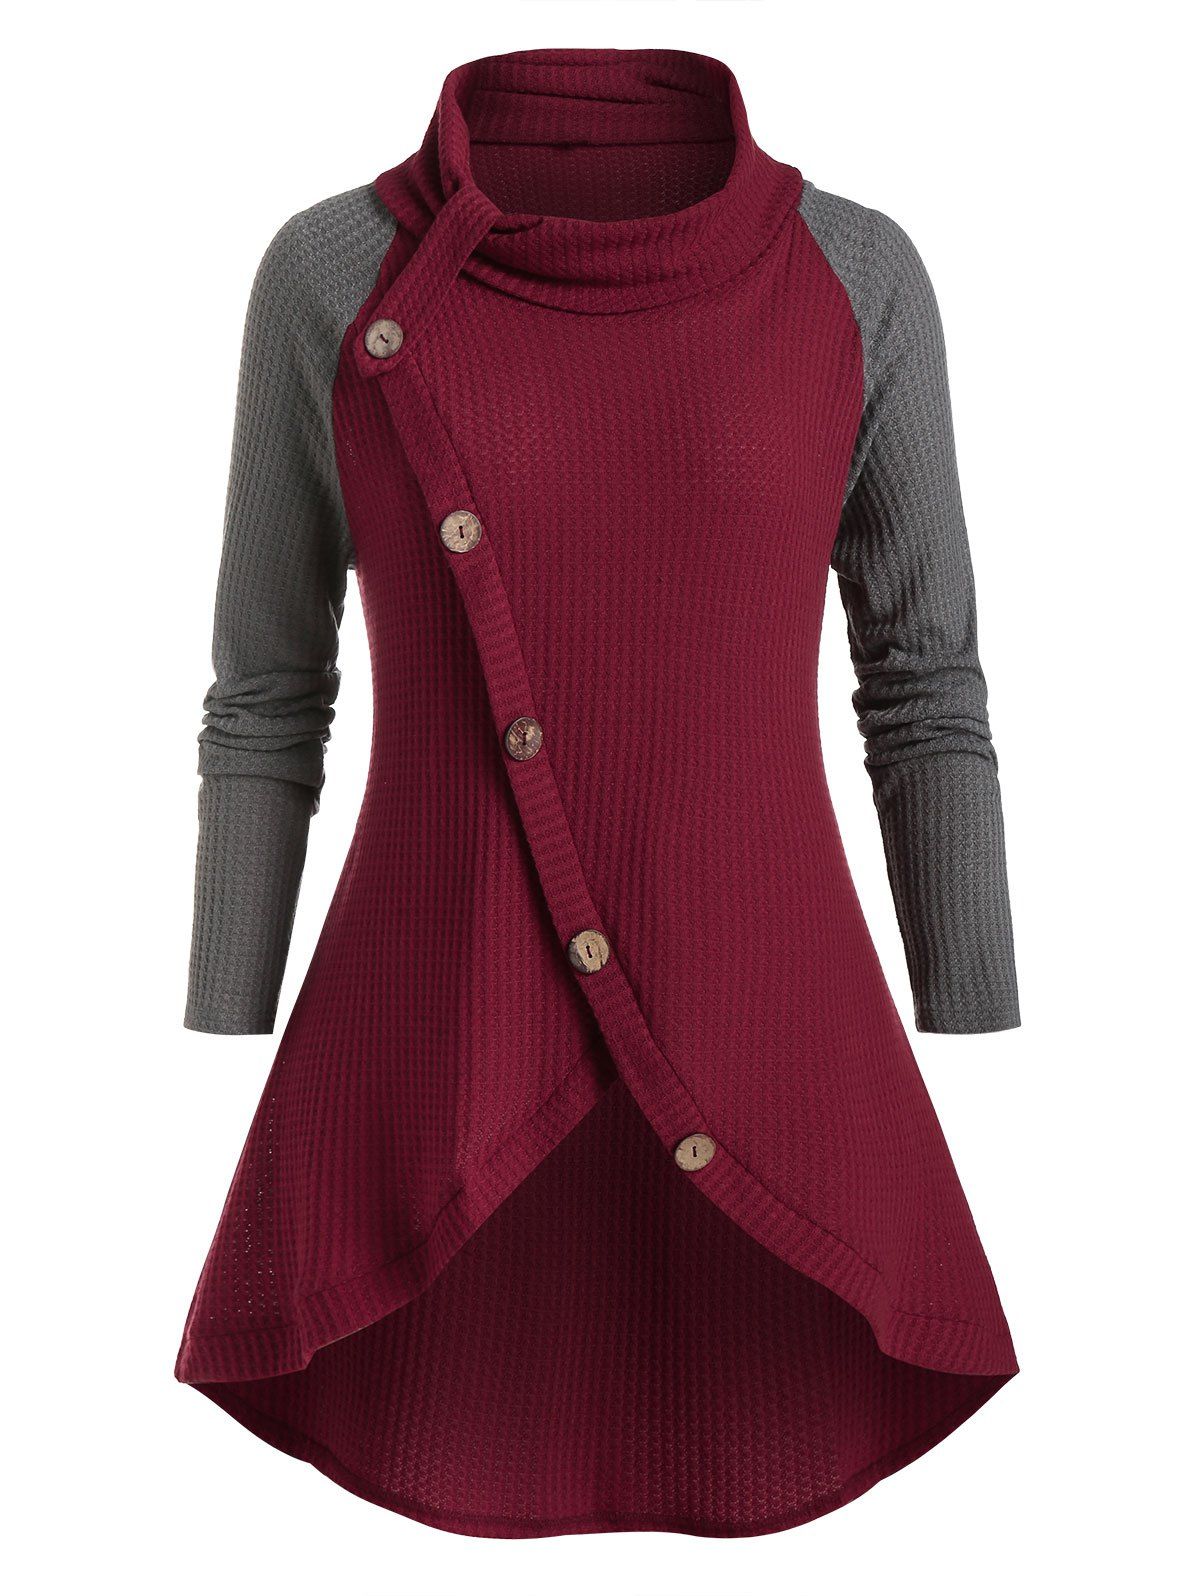 Plus Size Oblique Buttons Two-tone Sweater - multicolor 4X